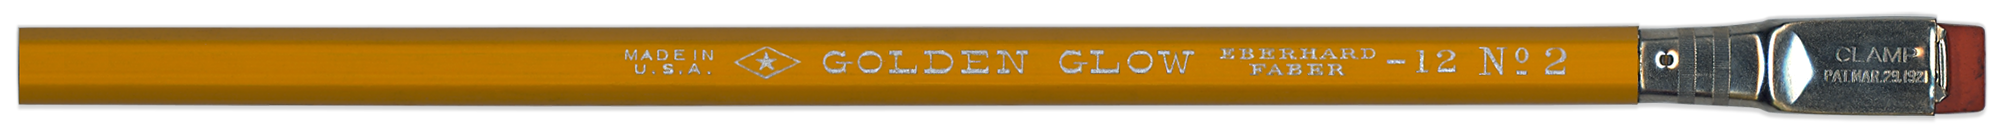 Golden Glow pencil